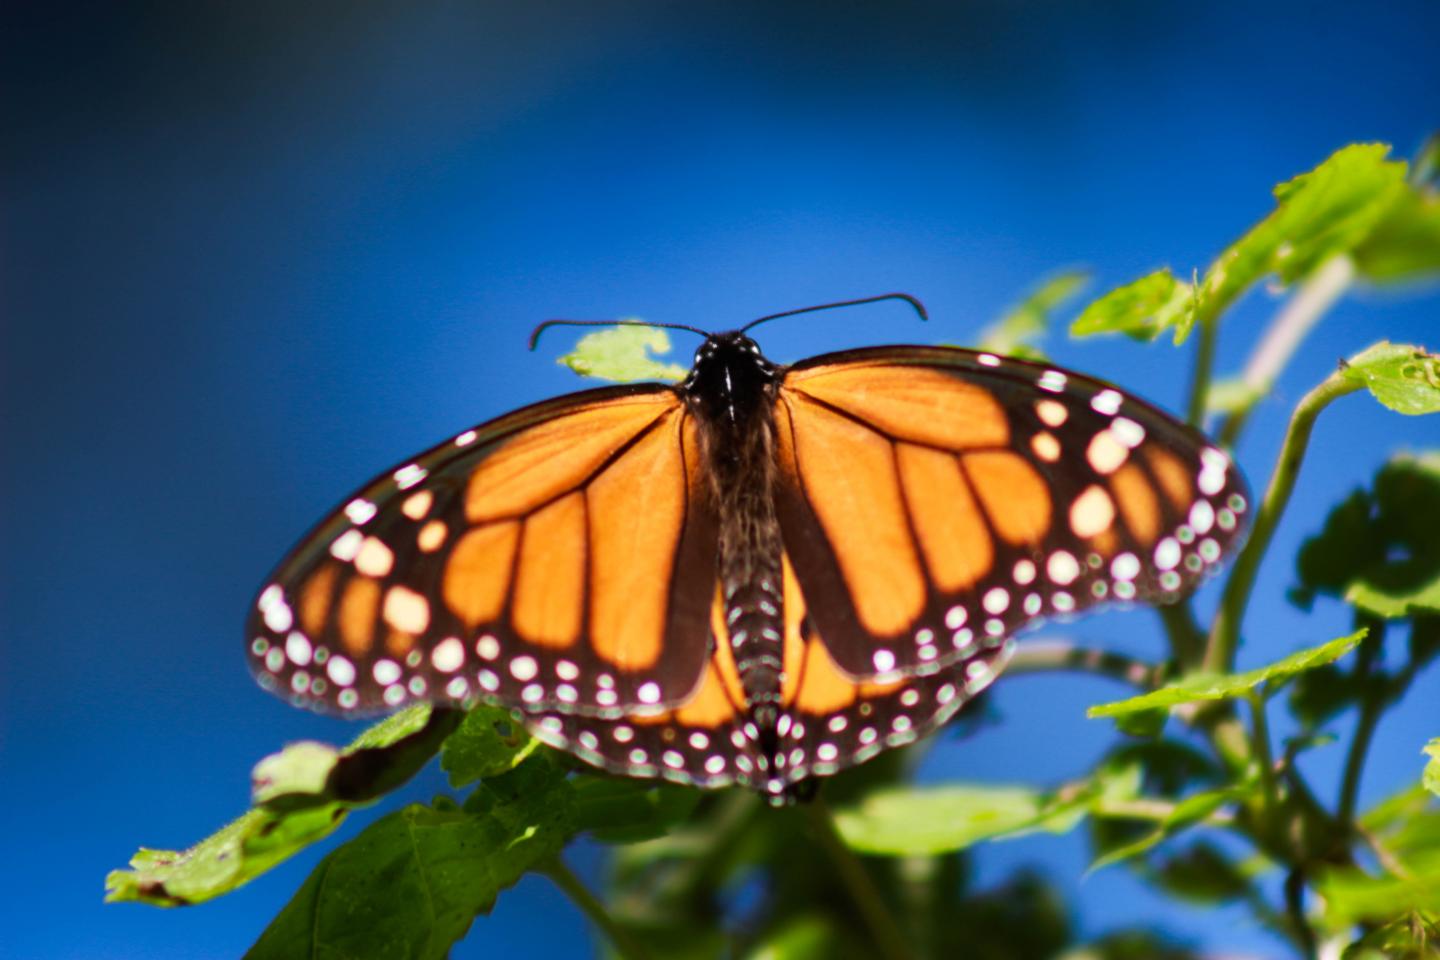 Eastern monarch butterfly